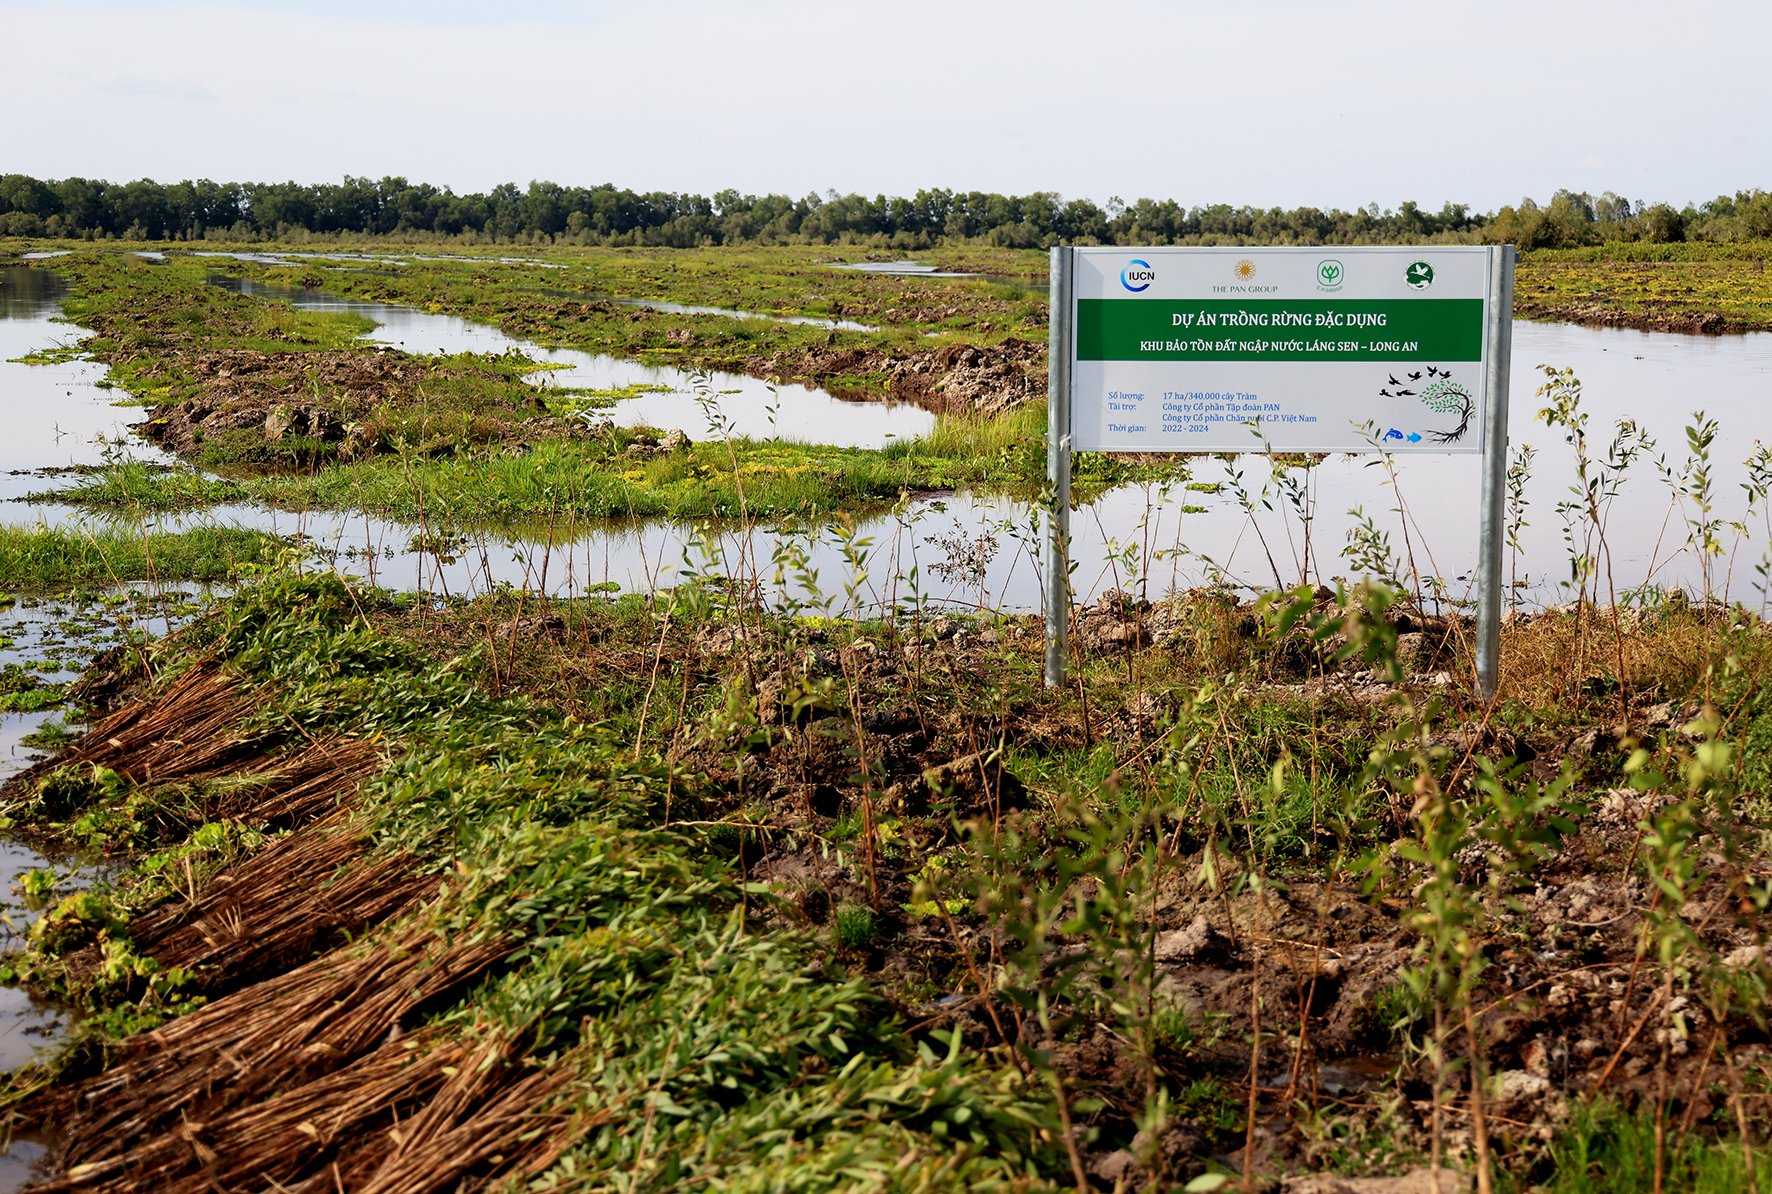 Phục hồi 17 ha rừng tràm ở Láng Sen: Các doanh nghiệp chung tay bảo vệ môi trường - Ảnh 1.